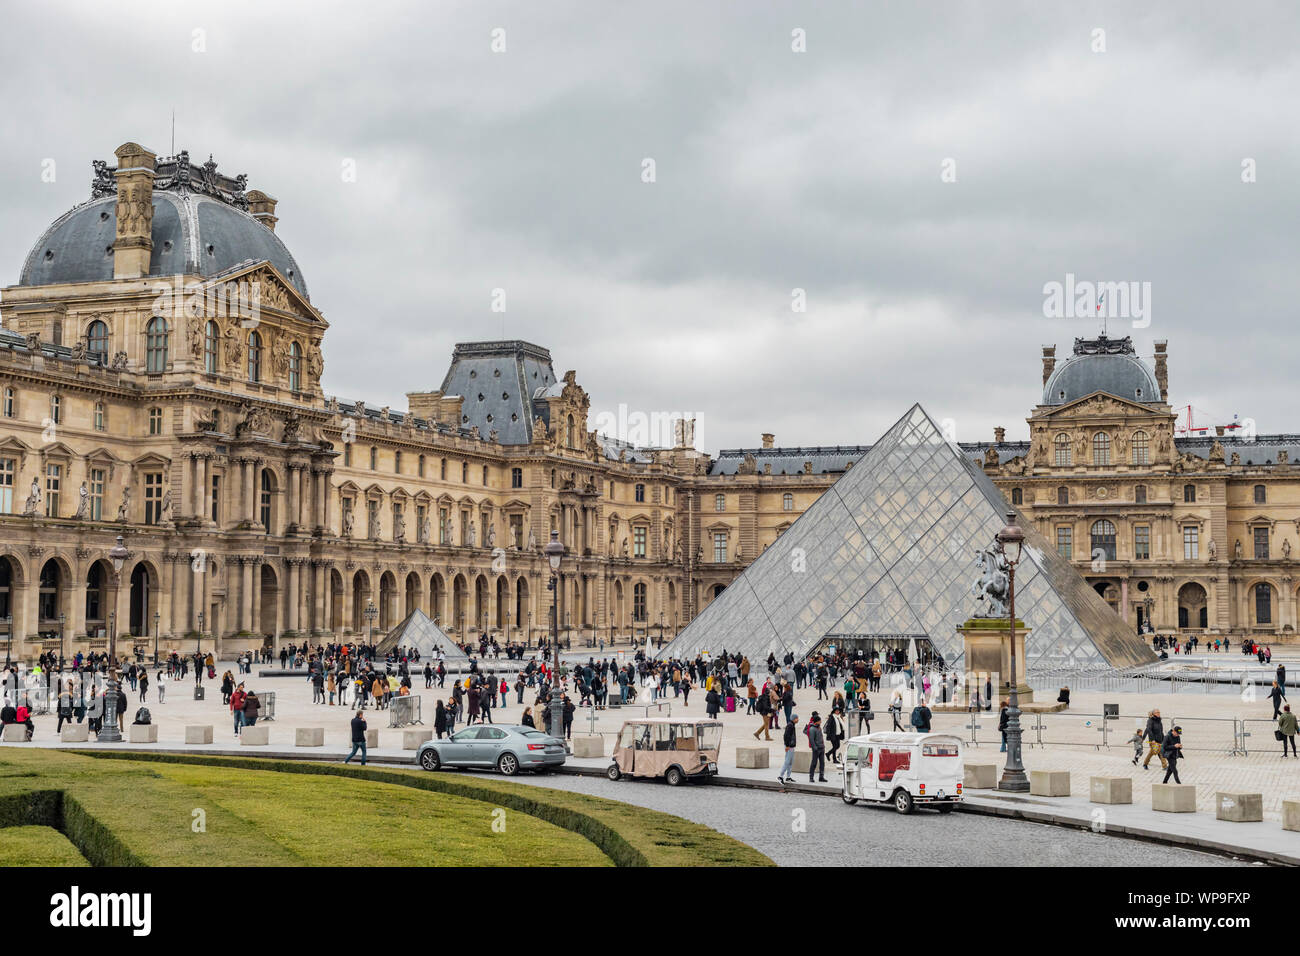 Paris, France - 28 janvier 2018 : les touristes se sont rassemblés devant l'entrée du musée du Louvre dans la cour intérieure du palais et de pluie jour nuageux. Banque D'Images